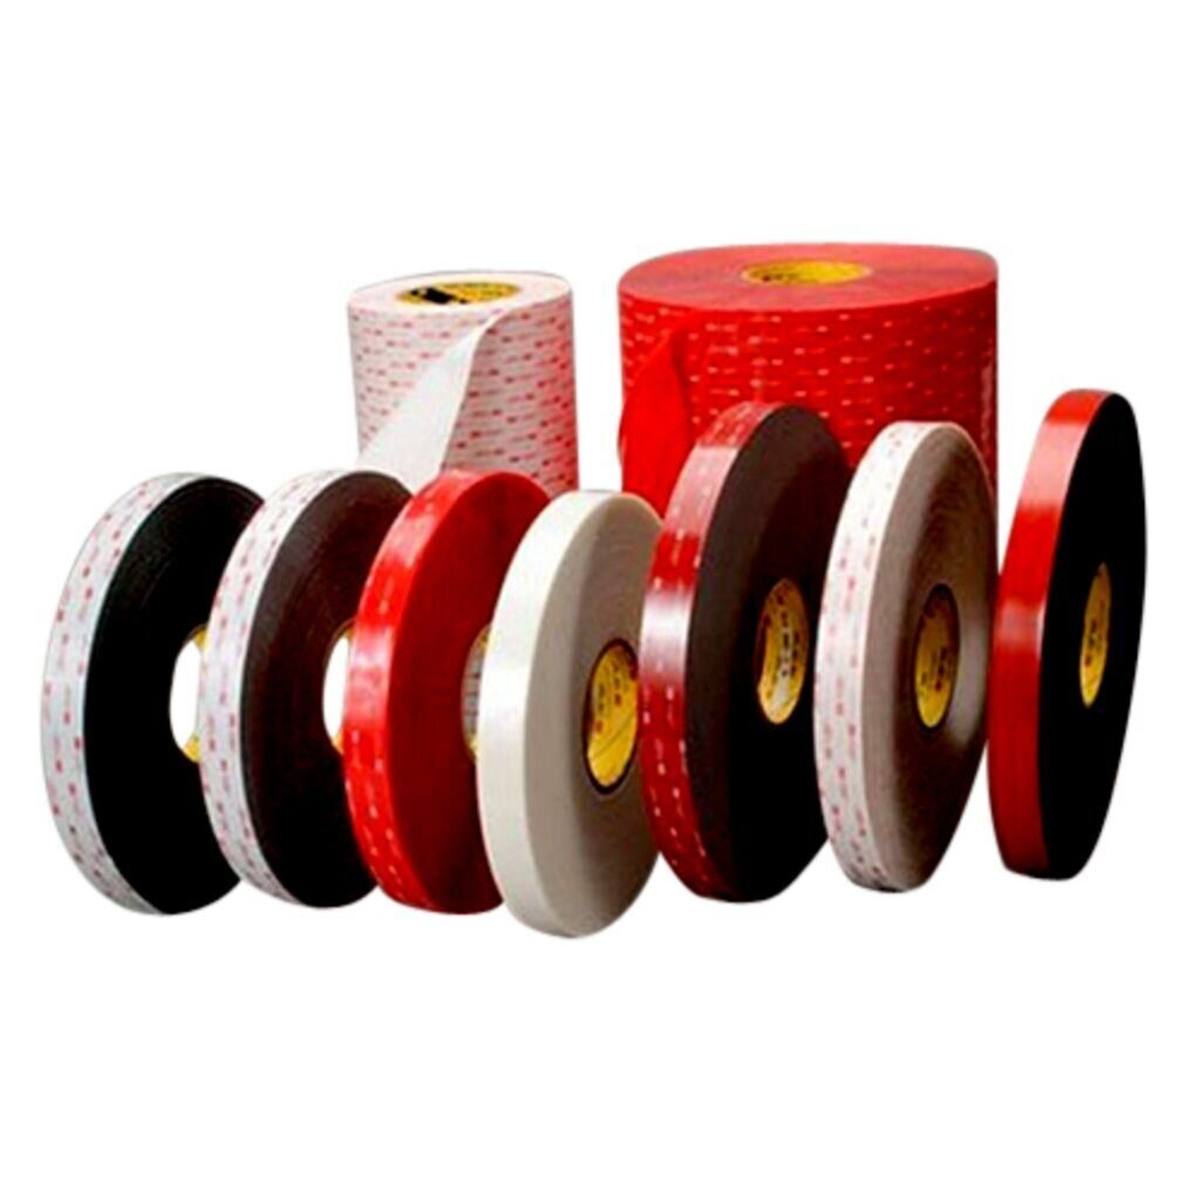 3M VHB Adhesive tape 4905F, transparent, 6 mm x 66 m, 0.5 mm